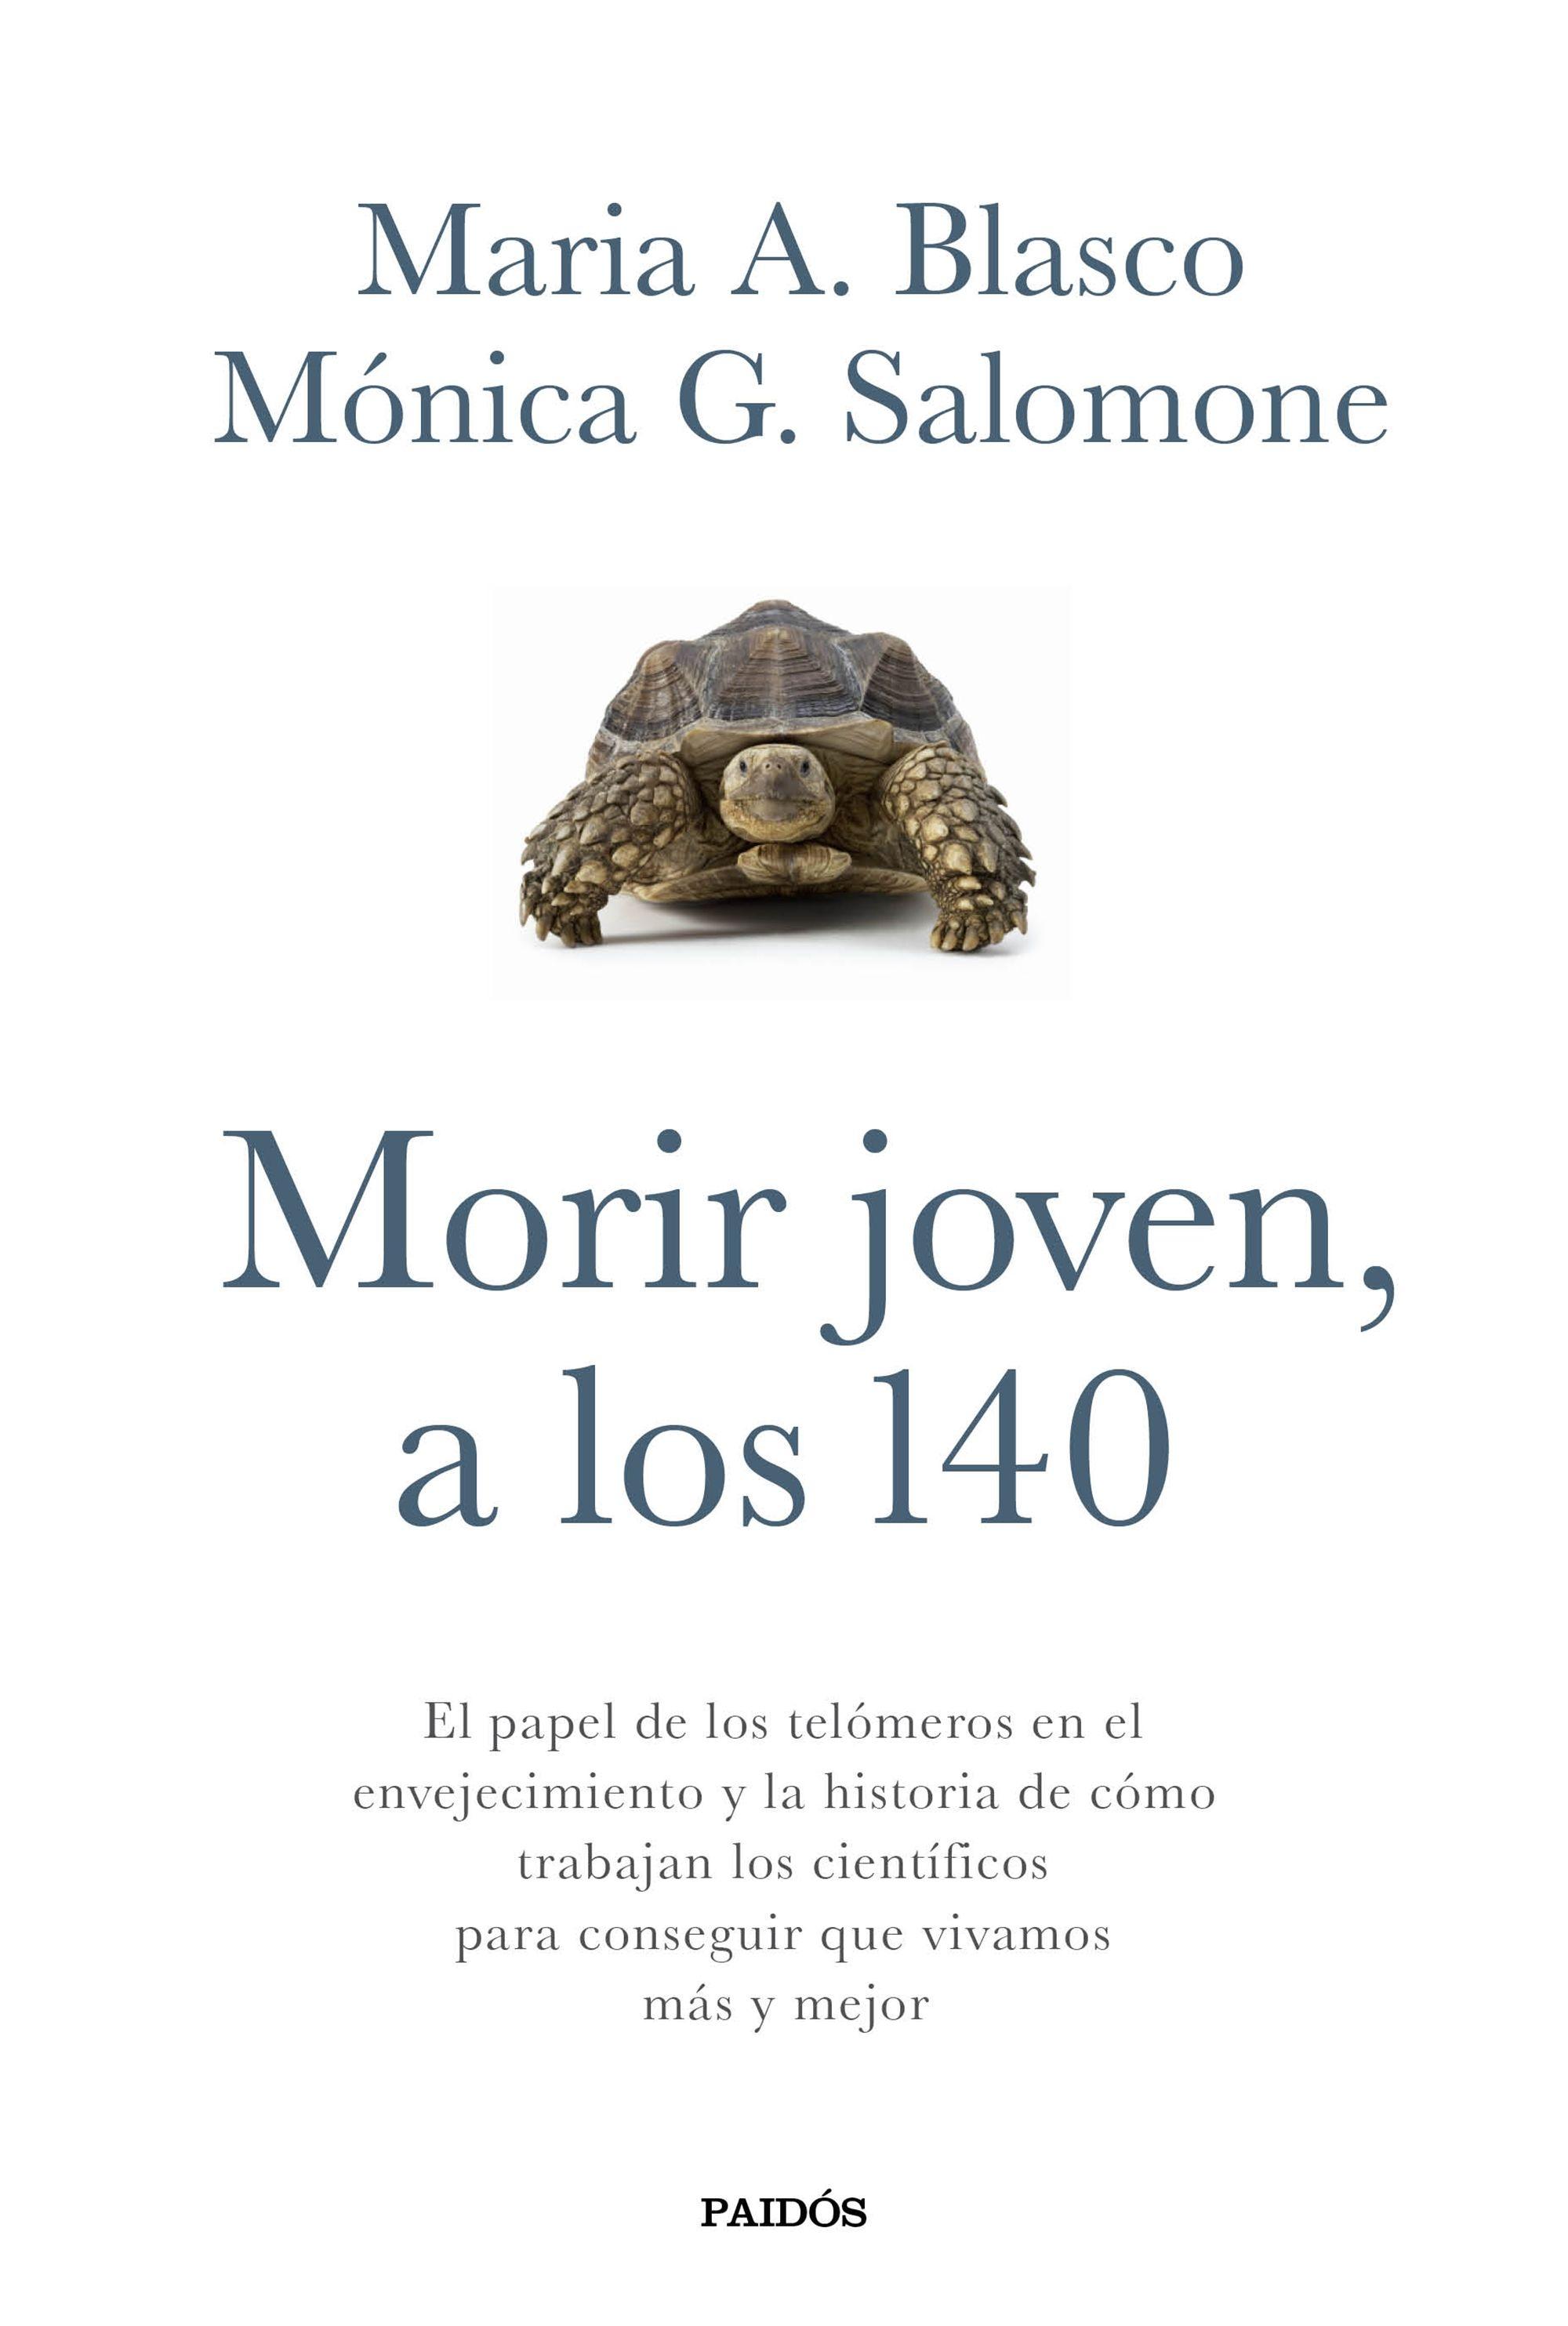 MORIR JOVEN, A LOS 140 "EL PAPEL DE LOS TELÓMEROS EN EL ENVEJECIMIENTO Y LA HISTORIA DE CÓMO TRA". 